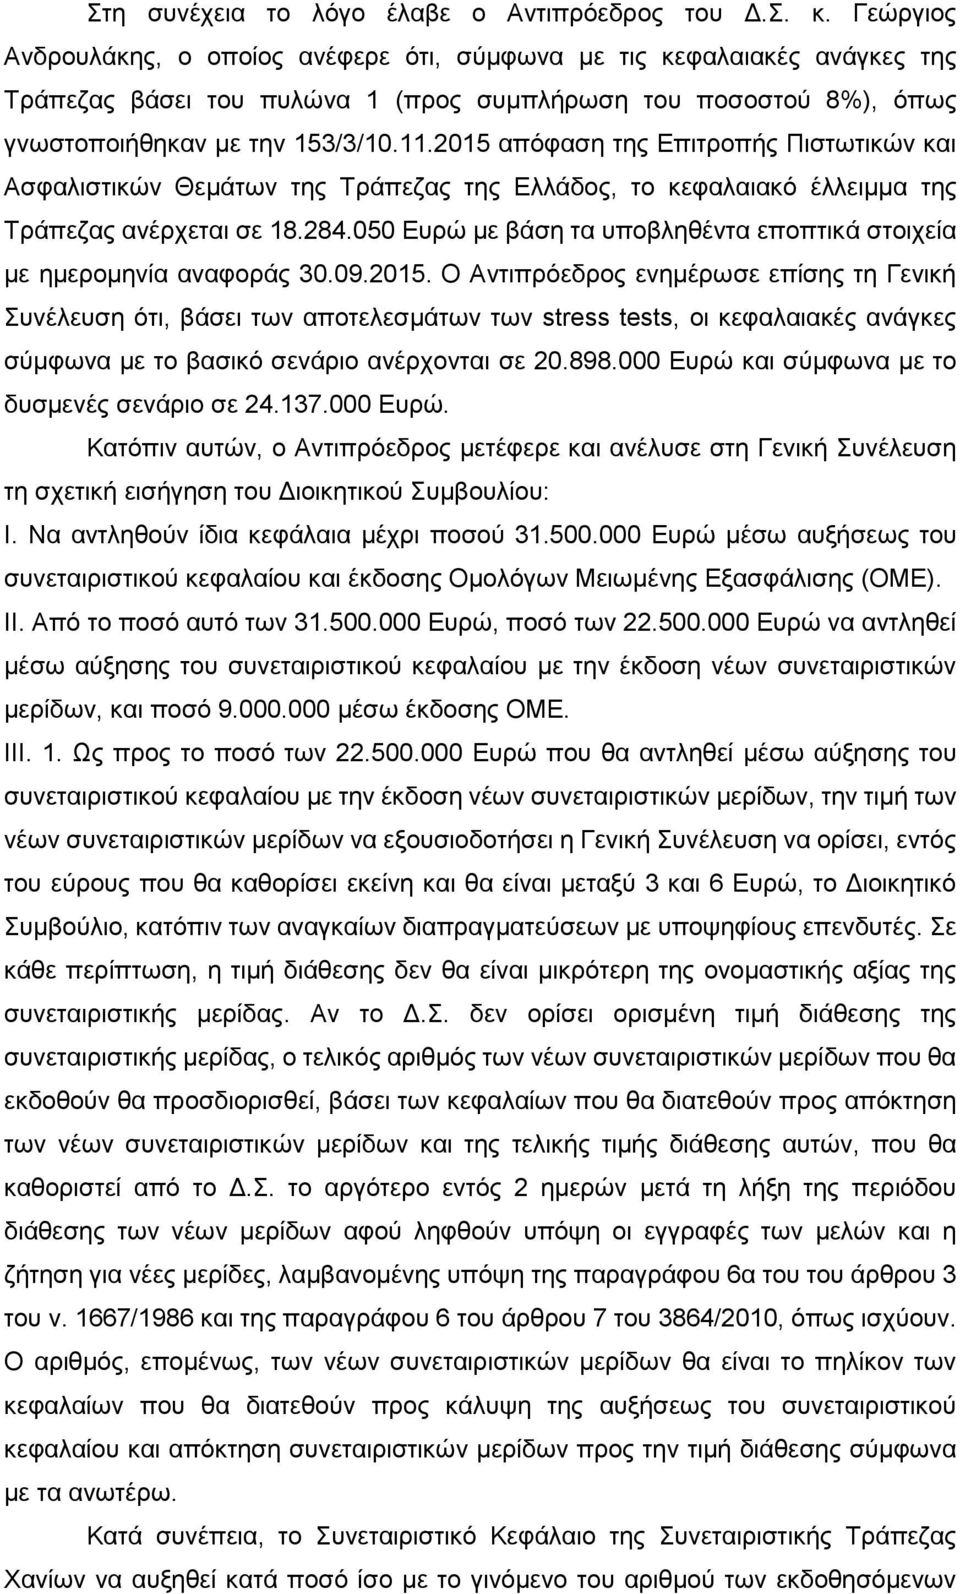 2015 απόφαση της Επιτροπής Πιστωτικών και Ασφαλιστικών Θεµάτων της Τράπεζας της Ελλάδος, το κεφαλαιακό έλλειµµα της Τράπεζας ανέρχεται σε 18.284.